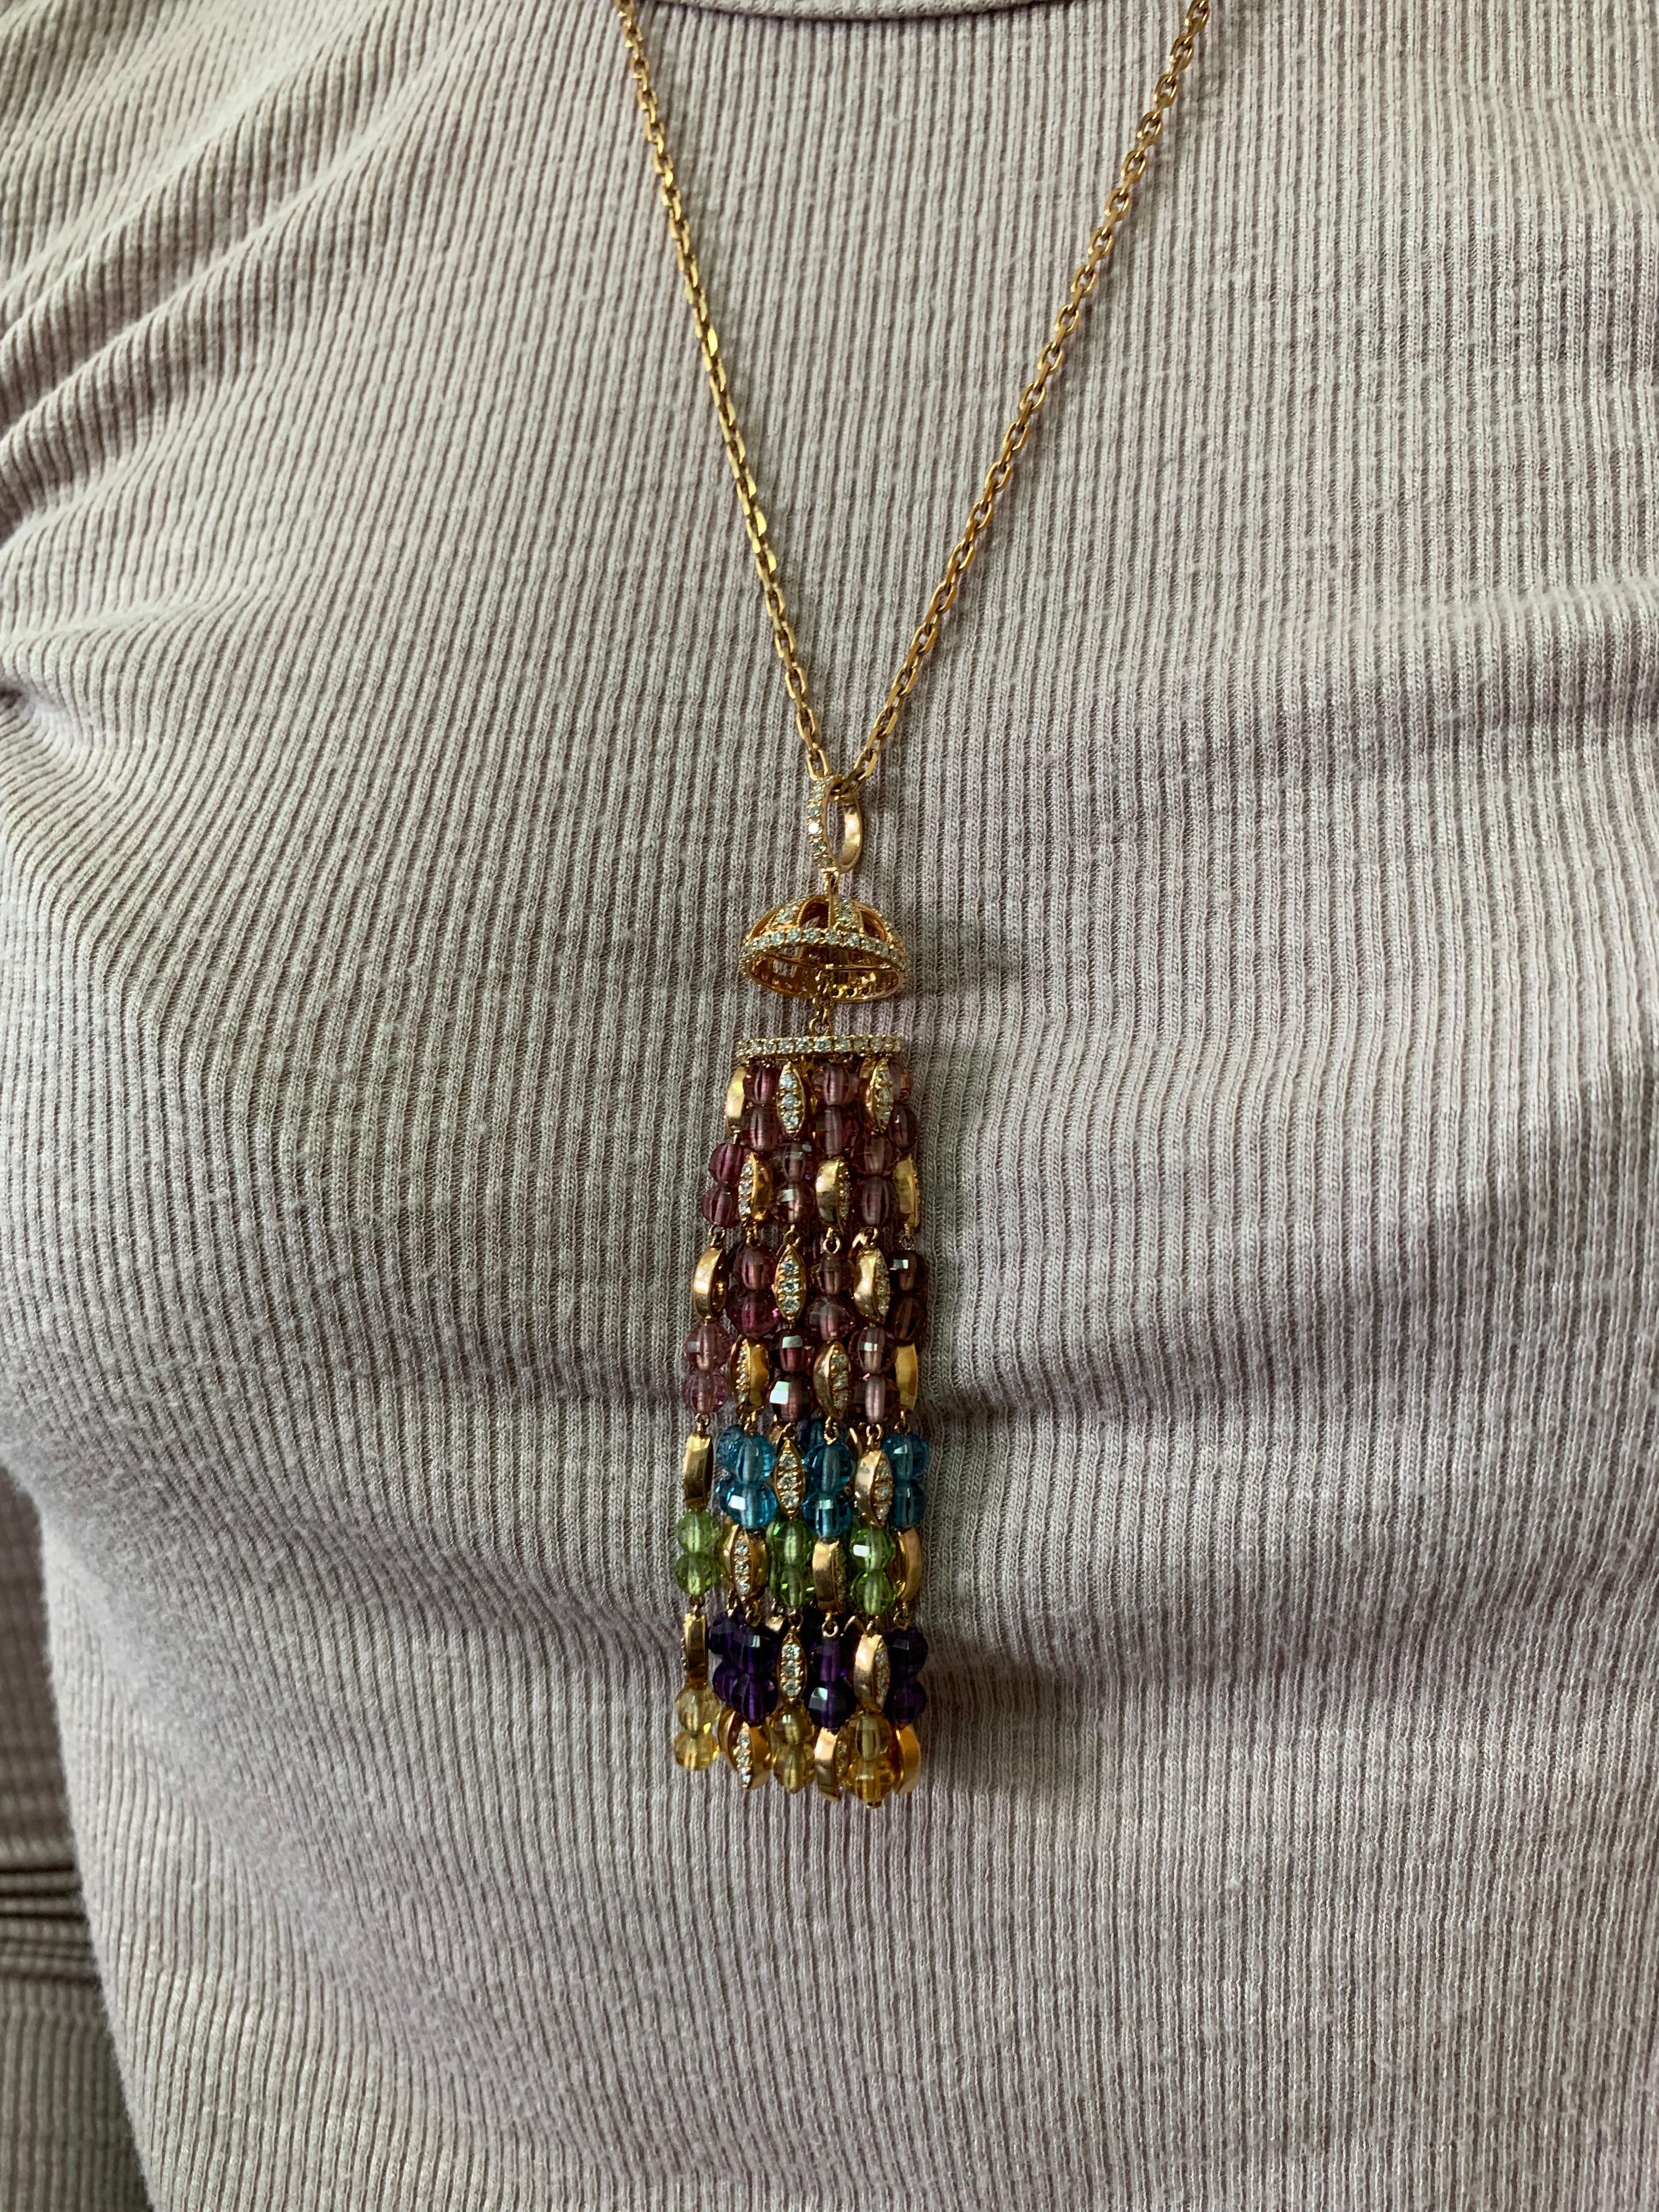 Zu Ehren des #PrideMonth präsentiert Sunita eine Regenbogen-Perlenkette, die elegant baumelt. Zur Unterstützung von Liebe, Gleichheit und Einheit verwendet Sunita verschiedene Farbedelsteine, um einen Regenbogeneffekt zu erzielen. Dies ist eine